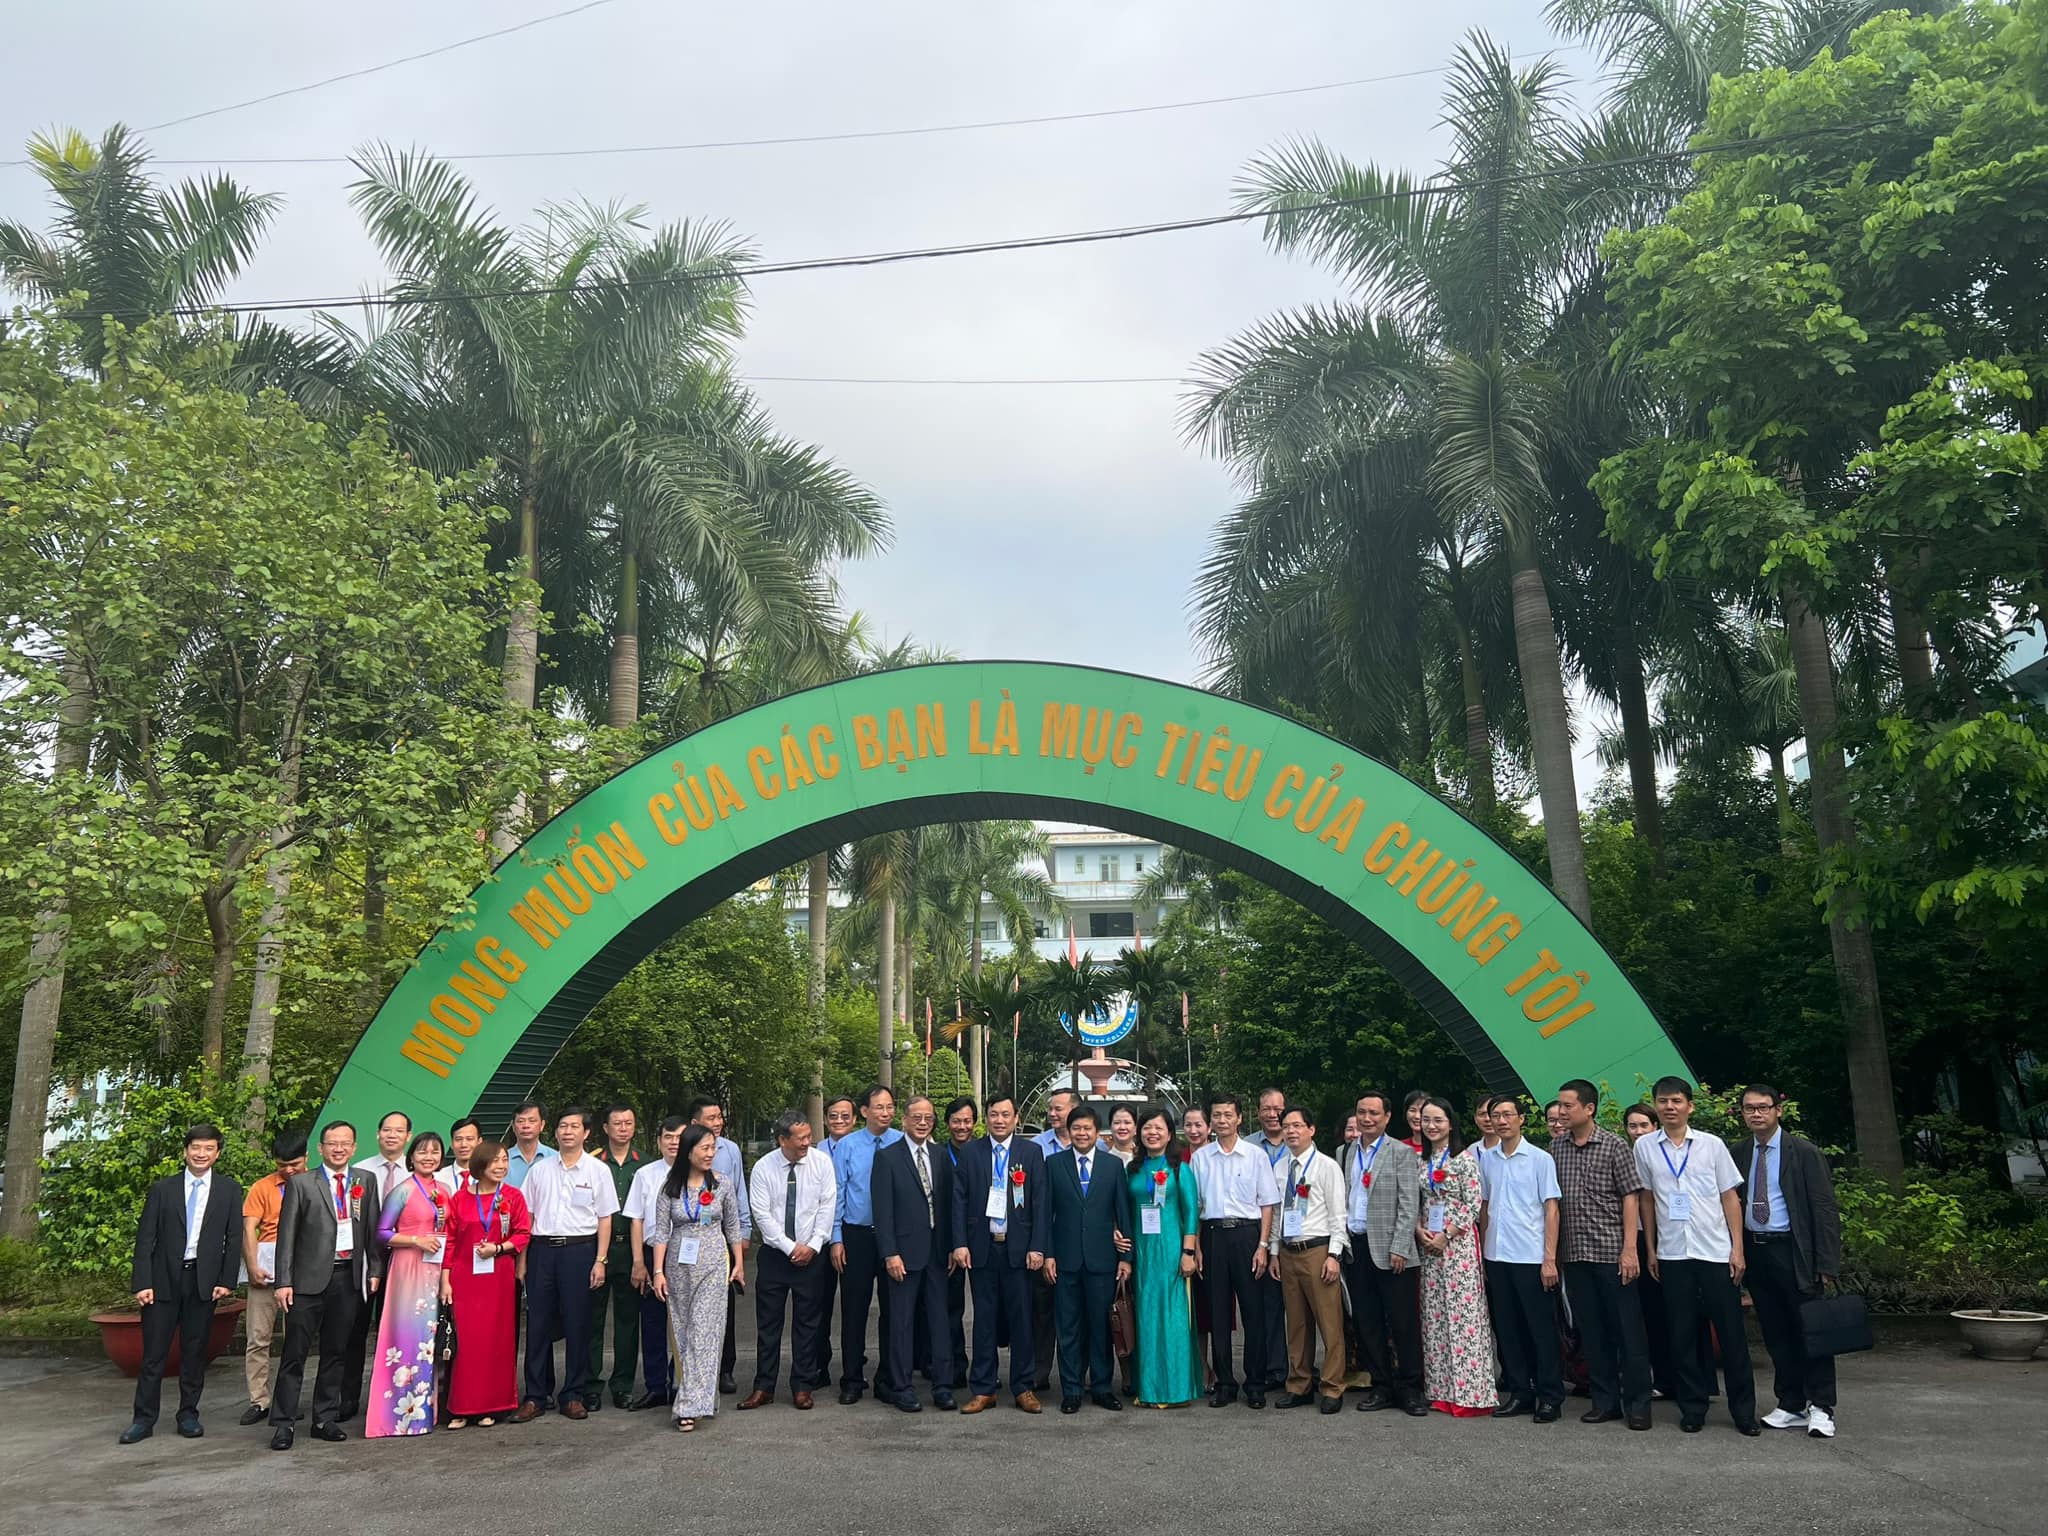 LTG tham dự Lễ kỷ niệm 15 năm thành lập HH các trường cao đẳng, trung cấp kinh tế – kỹ thuật (ATEC) Việt Nam.